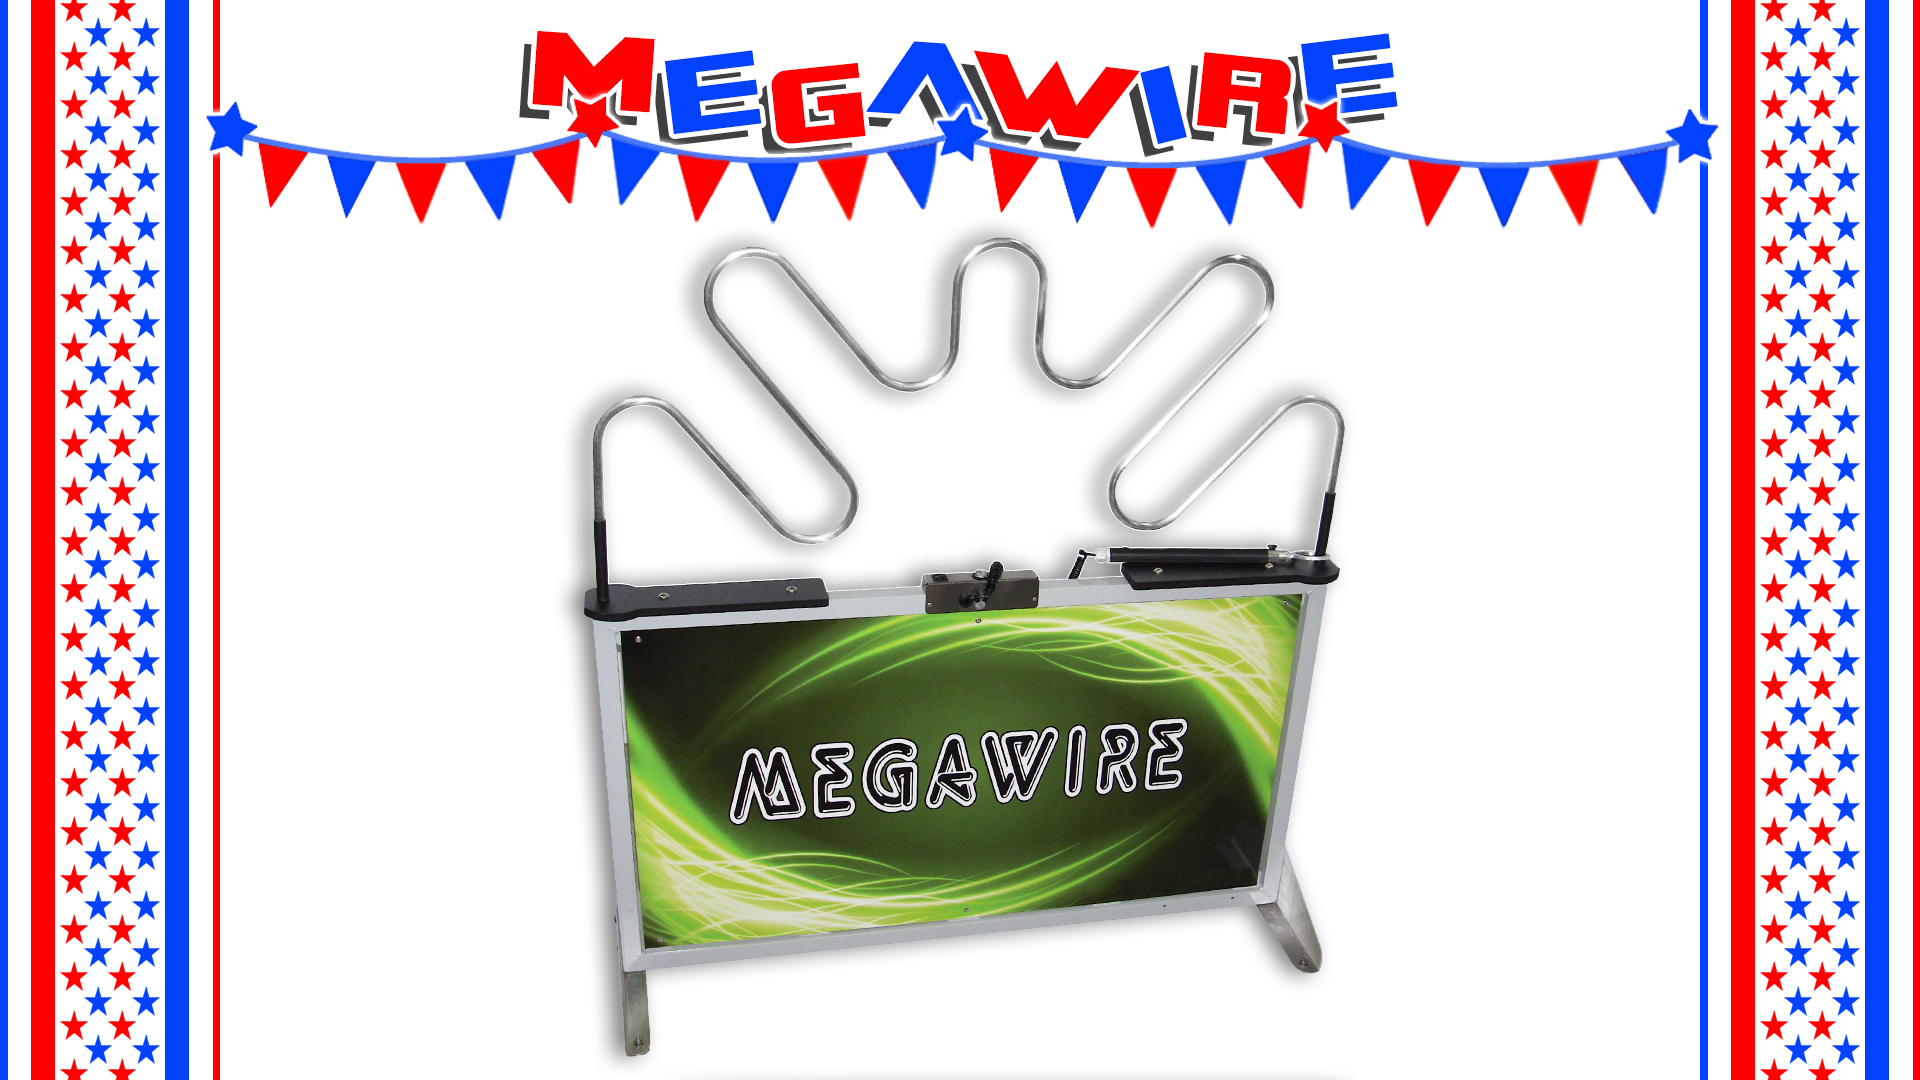 mega wire carnival game